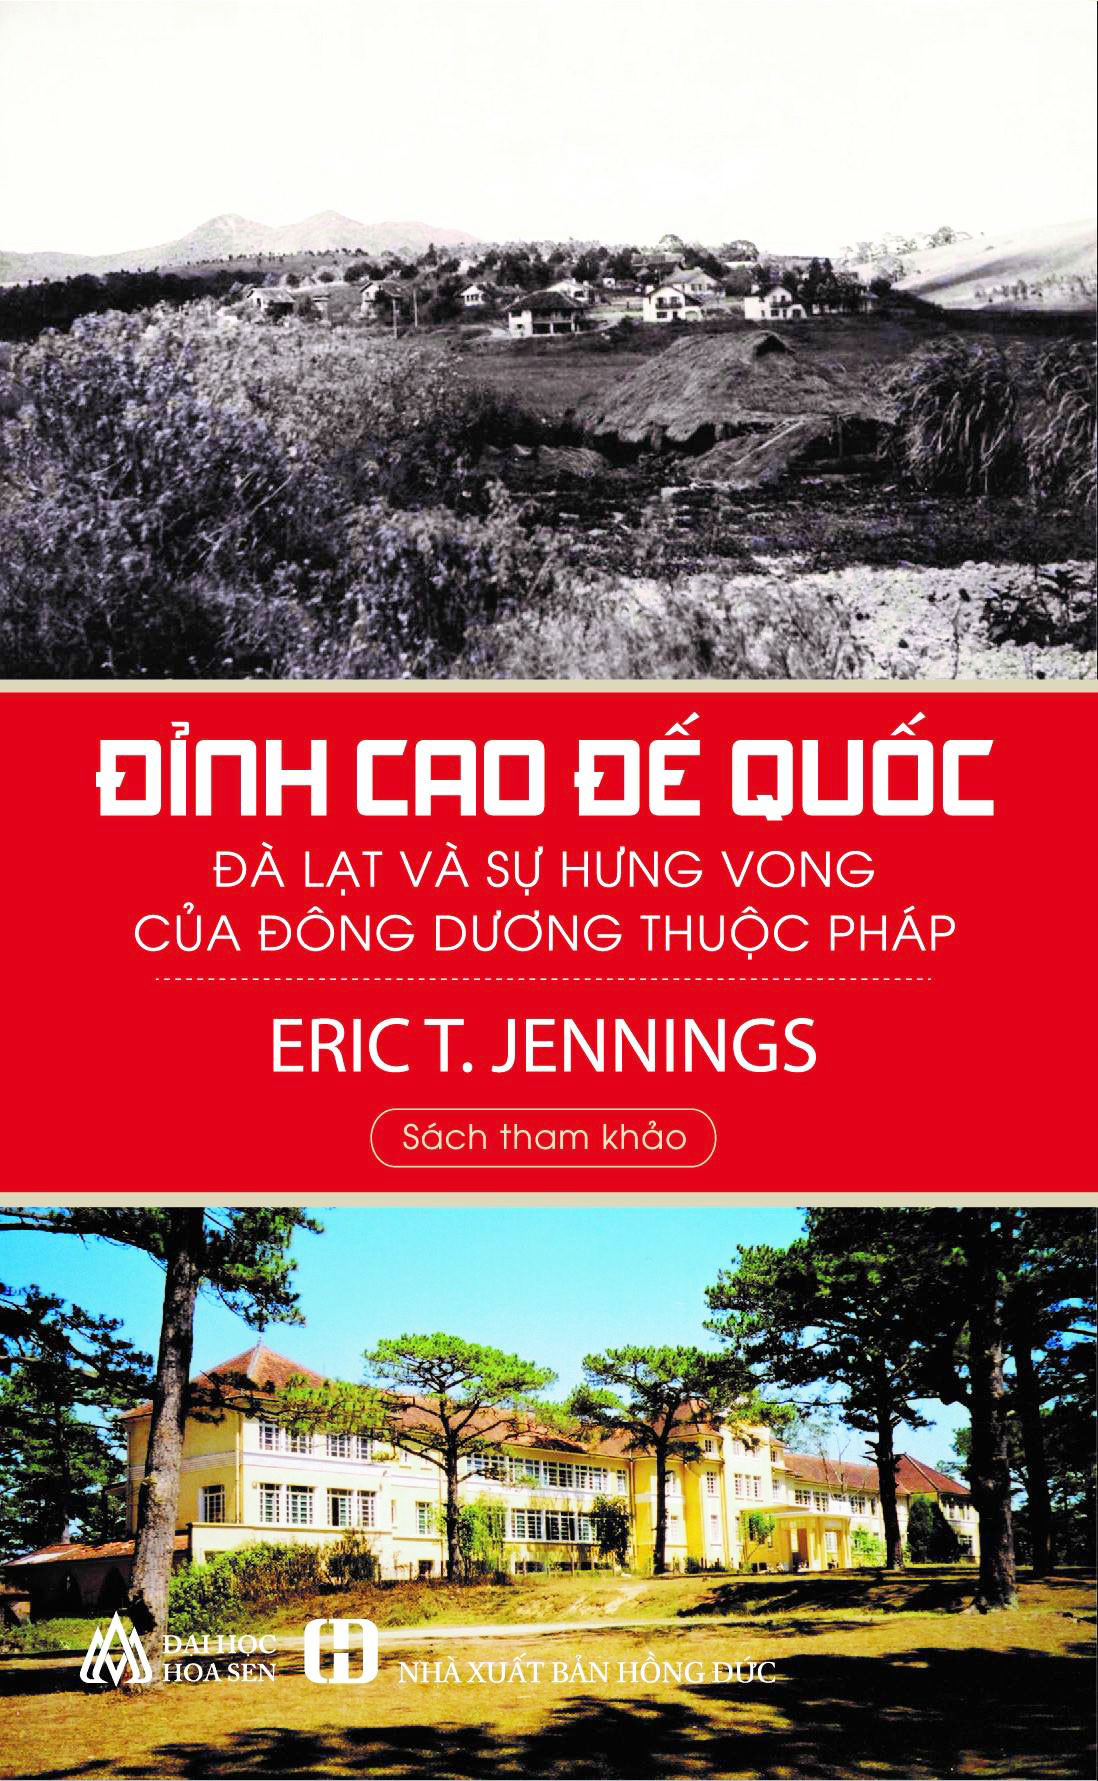 Bìa của tác phẩm bản tiếng Việt